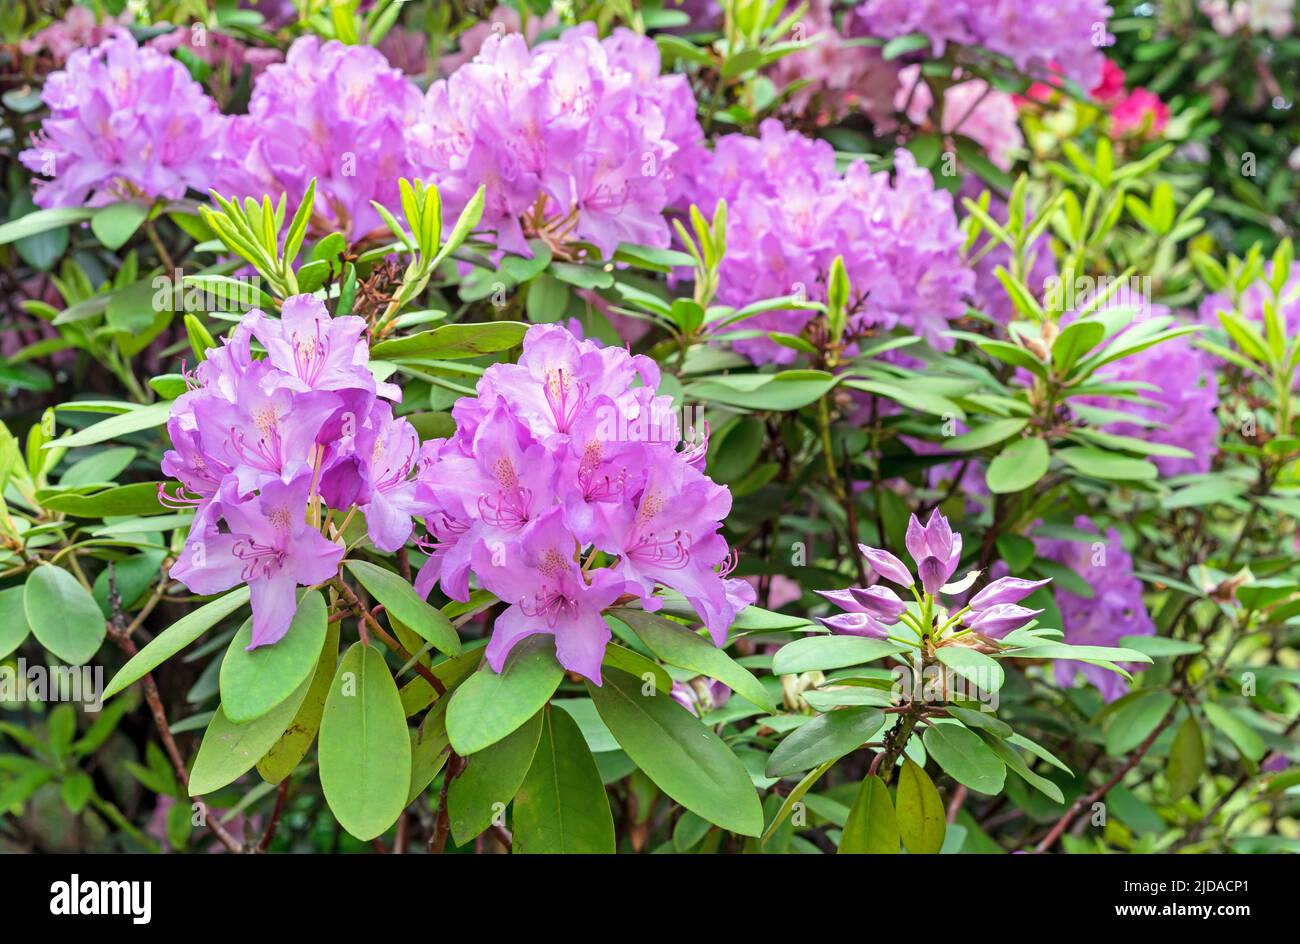 olyan sok valószínűség minimális rhododendron bass növény szed Népszerűsít  Ártatlan